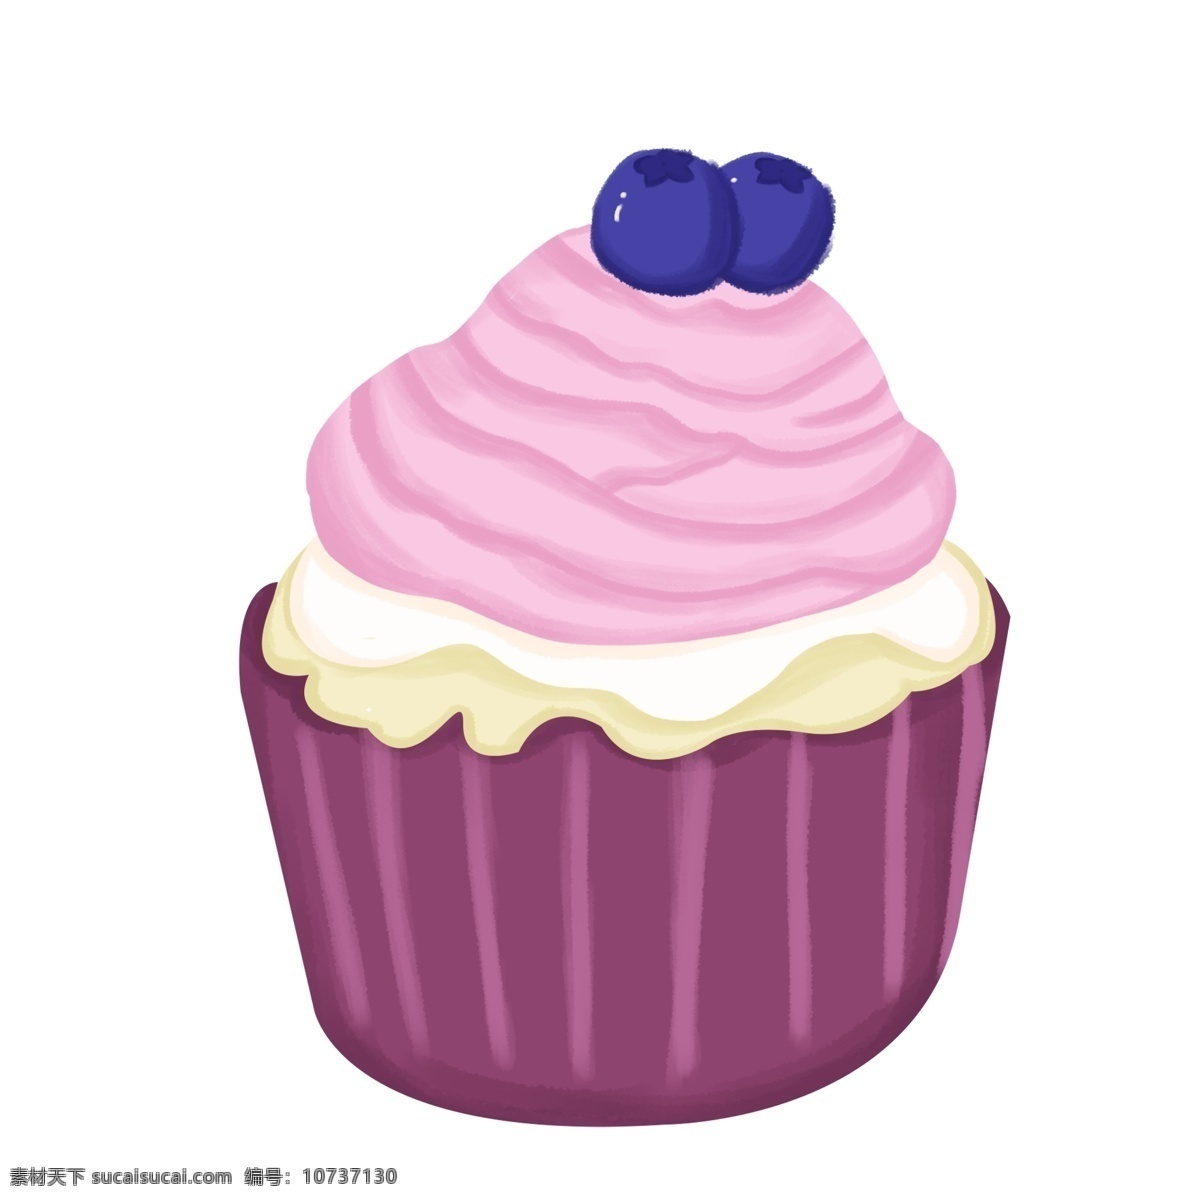 卡通 美味 蓝莓 水果 蛋糕 健康 奶油 手绘 插画 甜品 美食 营养 蓝莓蛋糕 水果蛋糕 矢量蛋糕